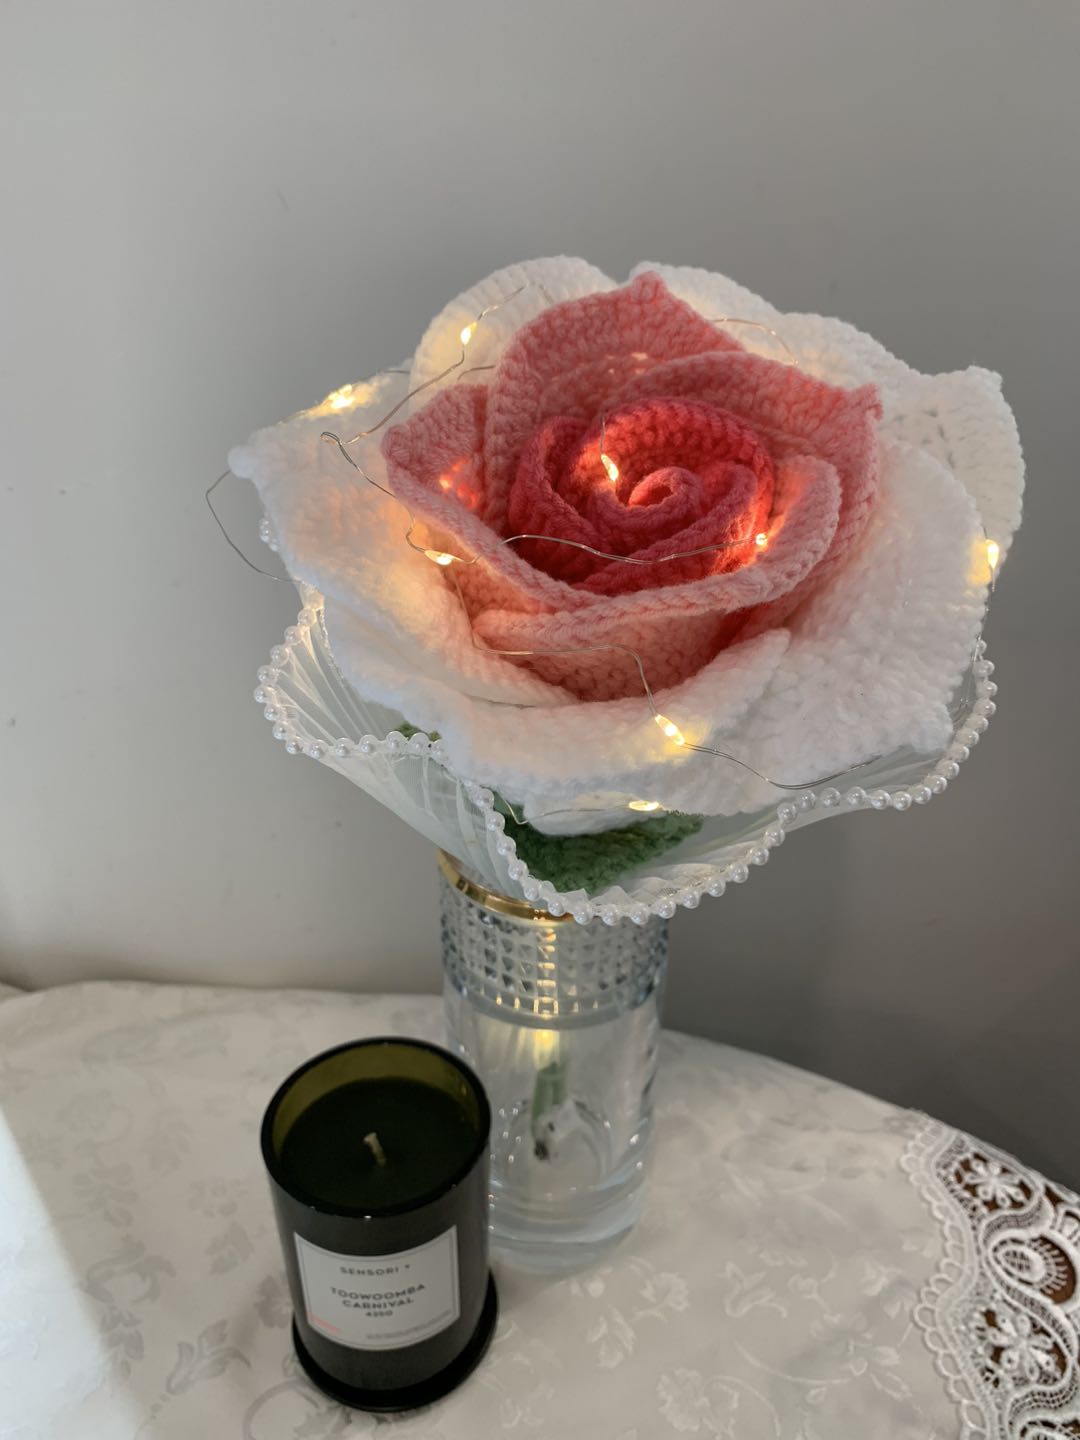 #Crochet rose